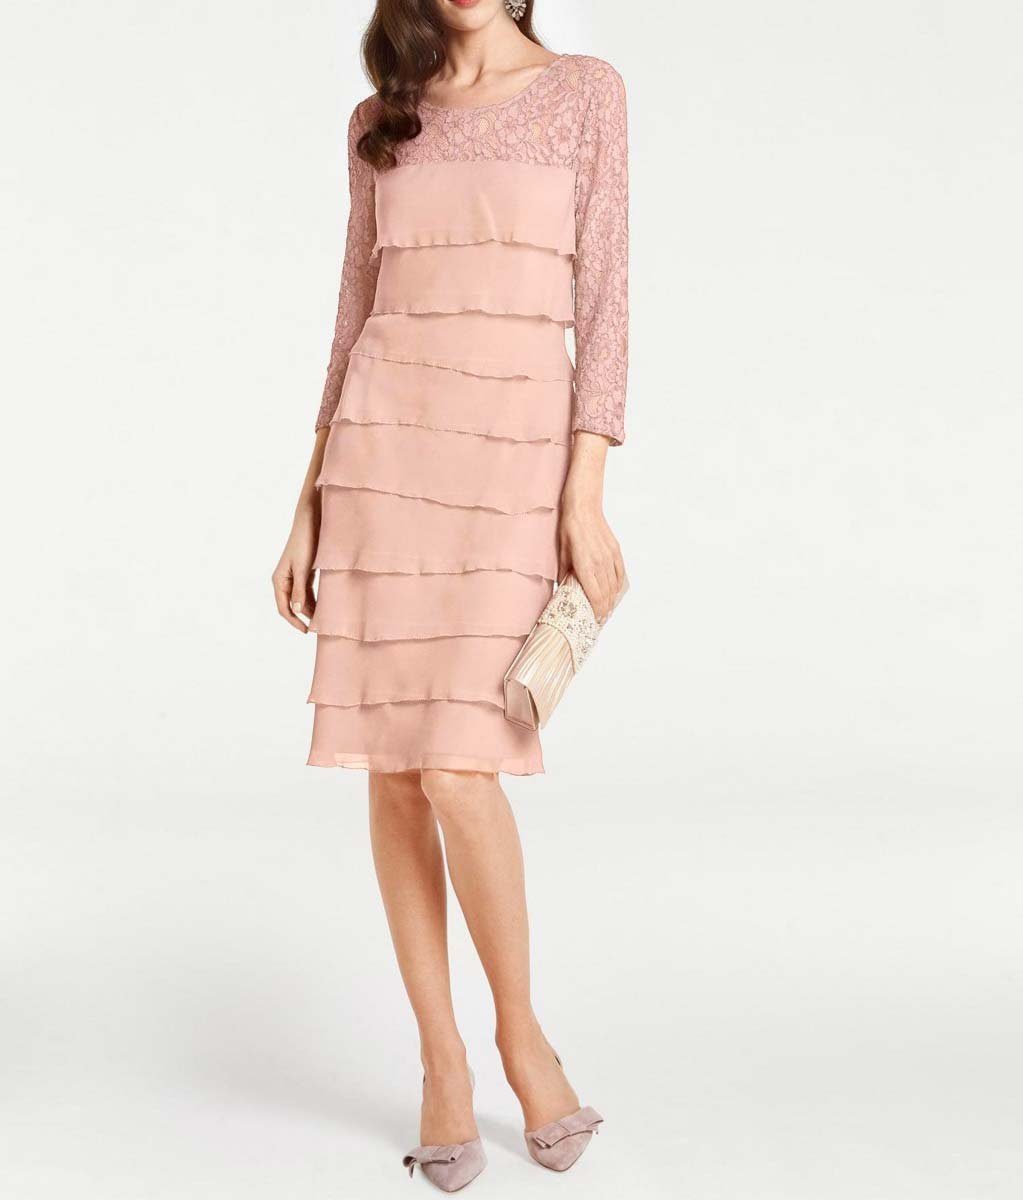 Ashley Brooke by heine Designer-Spitzen-Chiffonkleid, Damen BROOKE rosé ASHLEY Chiffonkleid